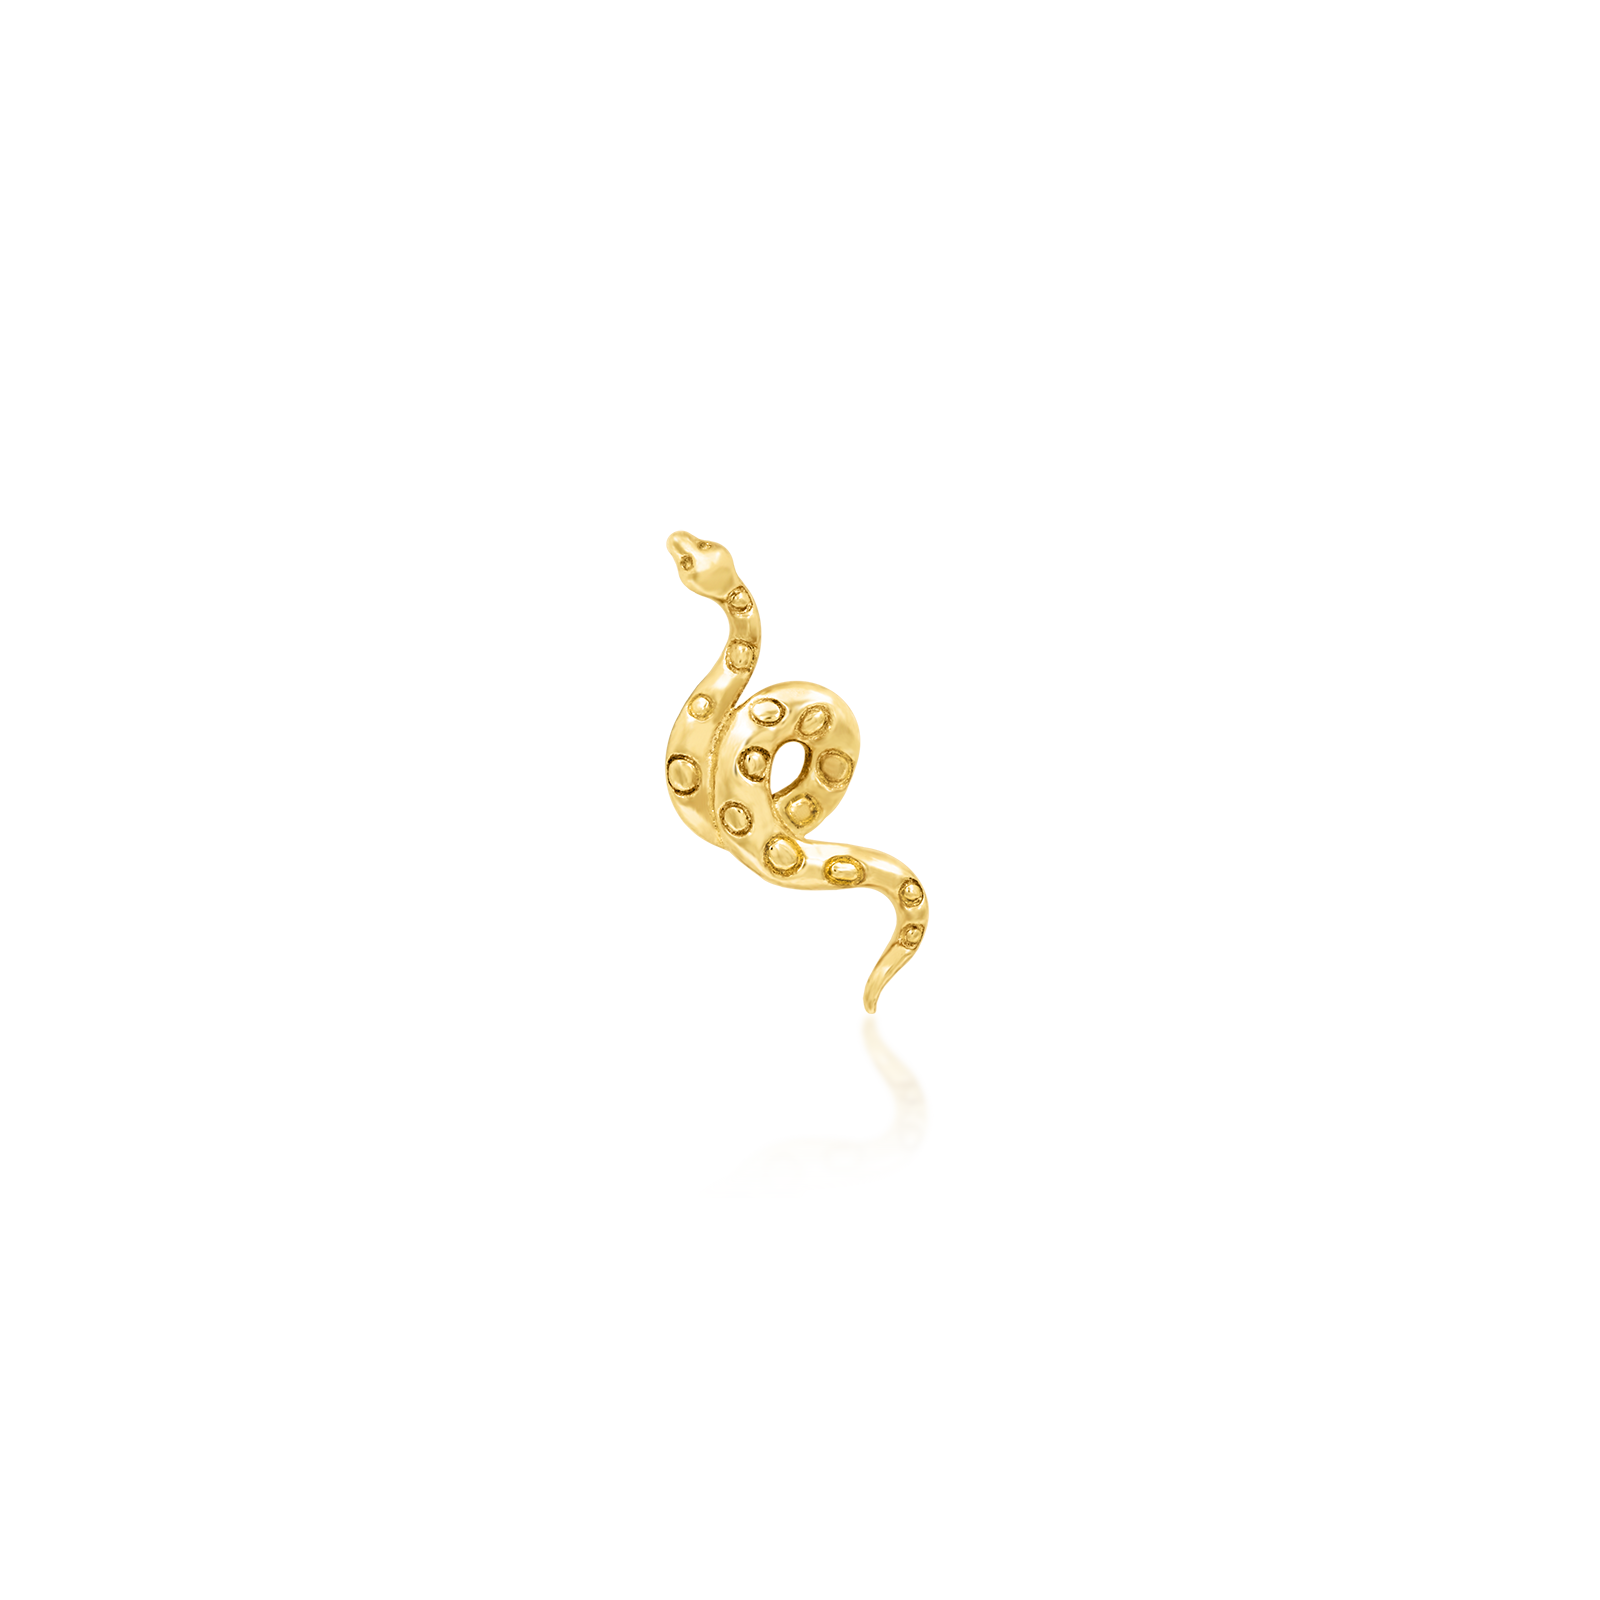 Textured Snake in 14k Gold by Junipurr